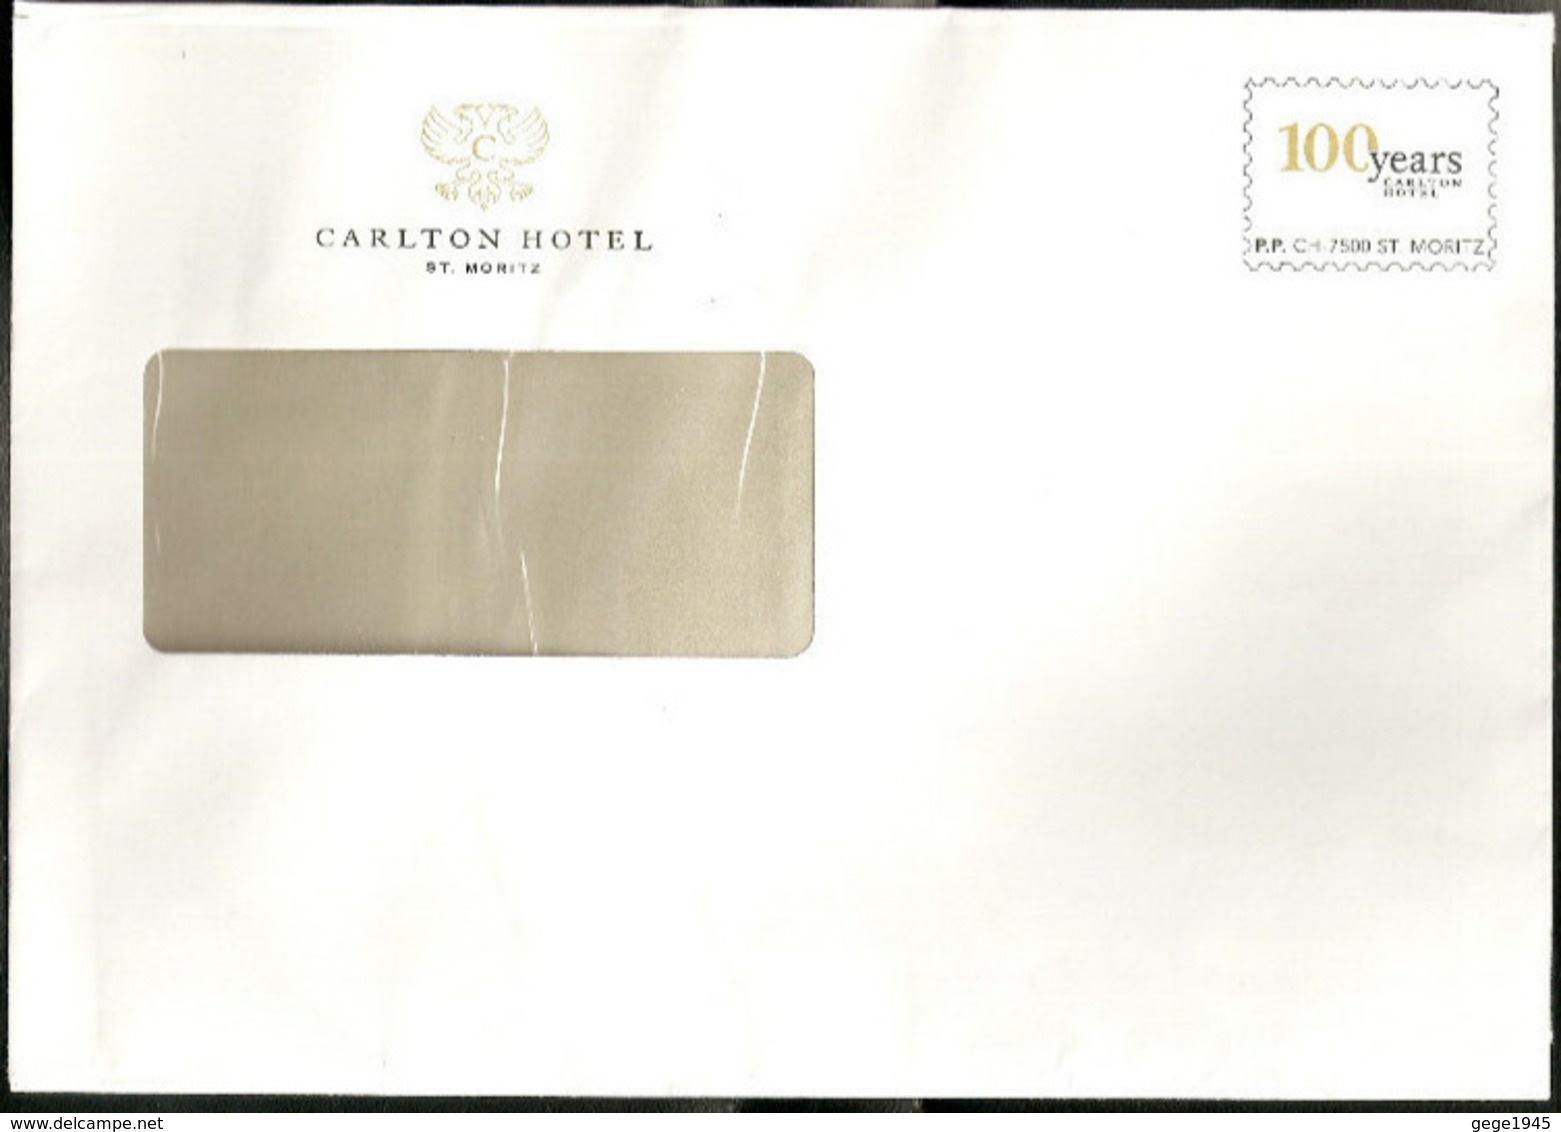 Lettre Prêt à Poster    " Carlton Hotel  "  Facsimilé   "   100 Years  Carlton   " Grand  Format - Prêts-à-poster: Repiquages Privés